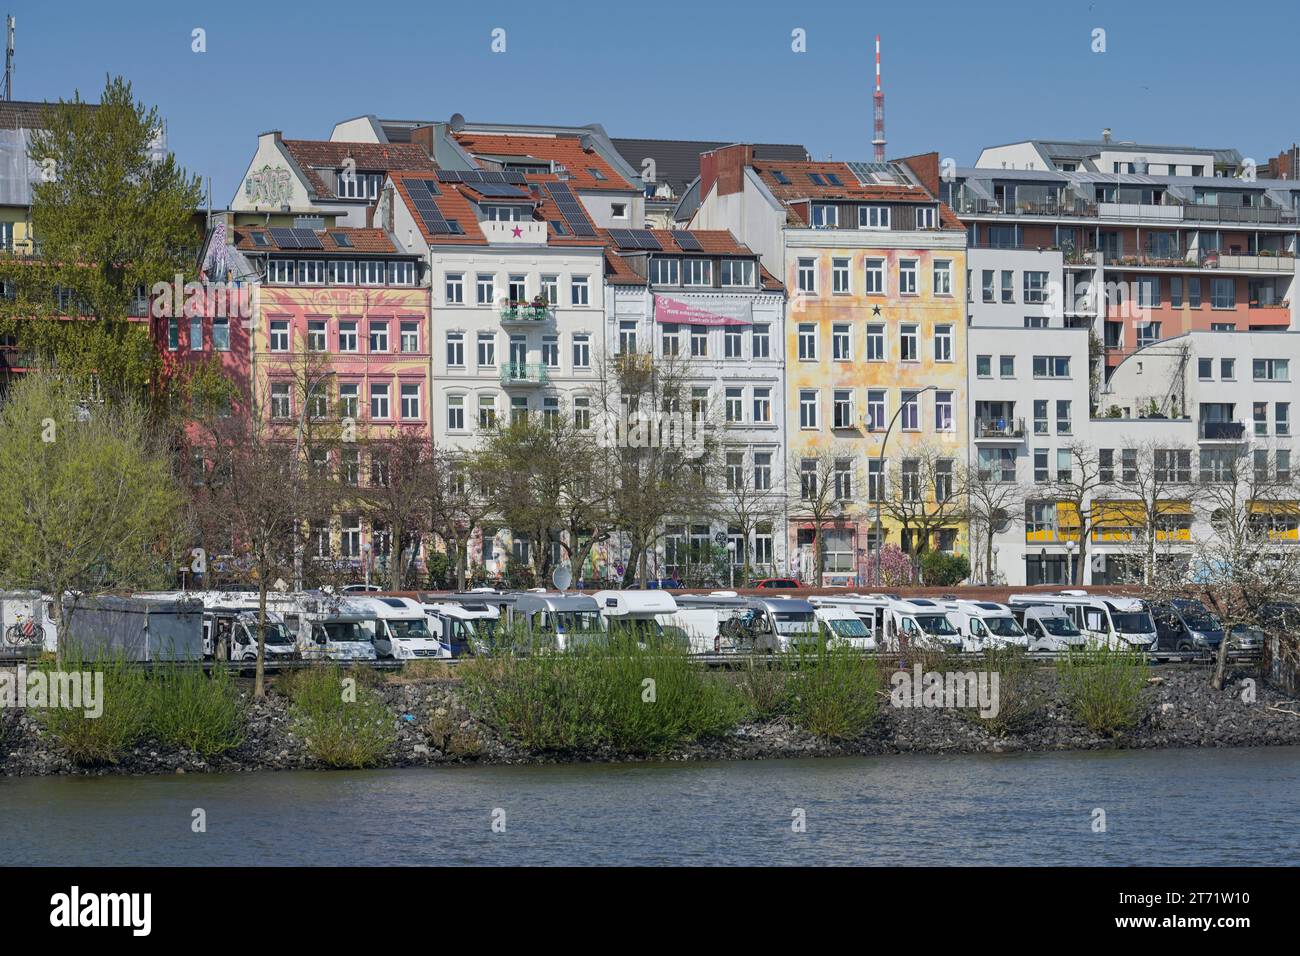 Wohnmobile, Stellplatz, Altbauten, Hafenstraße, St. Pauli, Hamburg, Deutschland Stock Photo